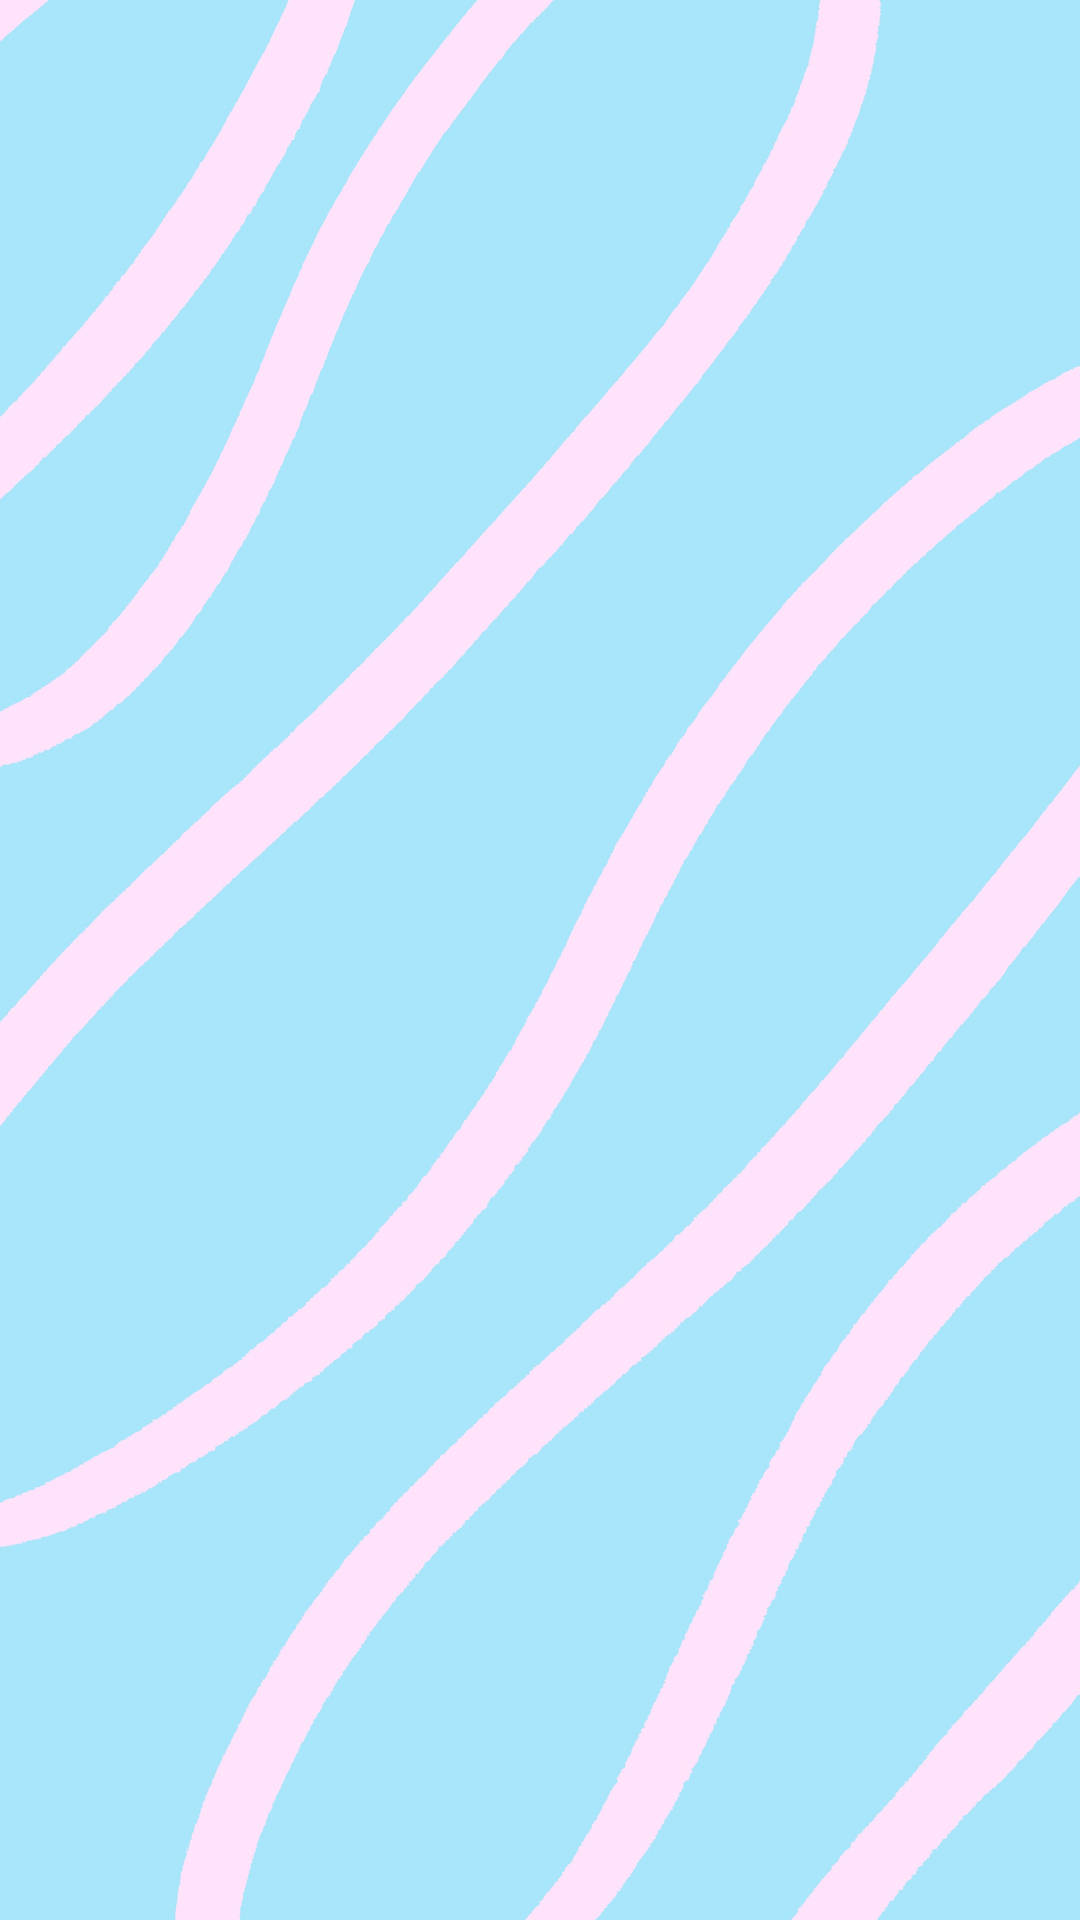 Minimalistaen Tonos Pastel Rosa Y Azul. Fondo de pantalla